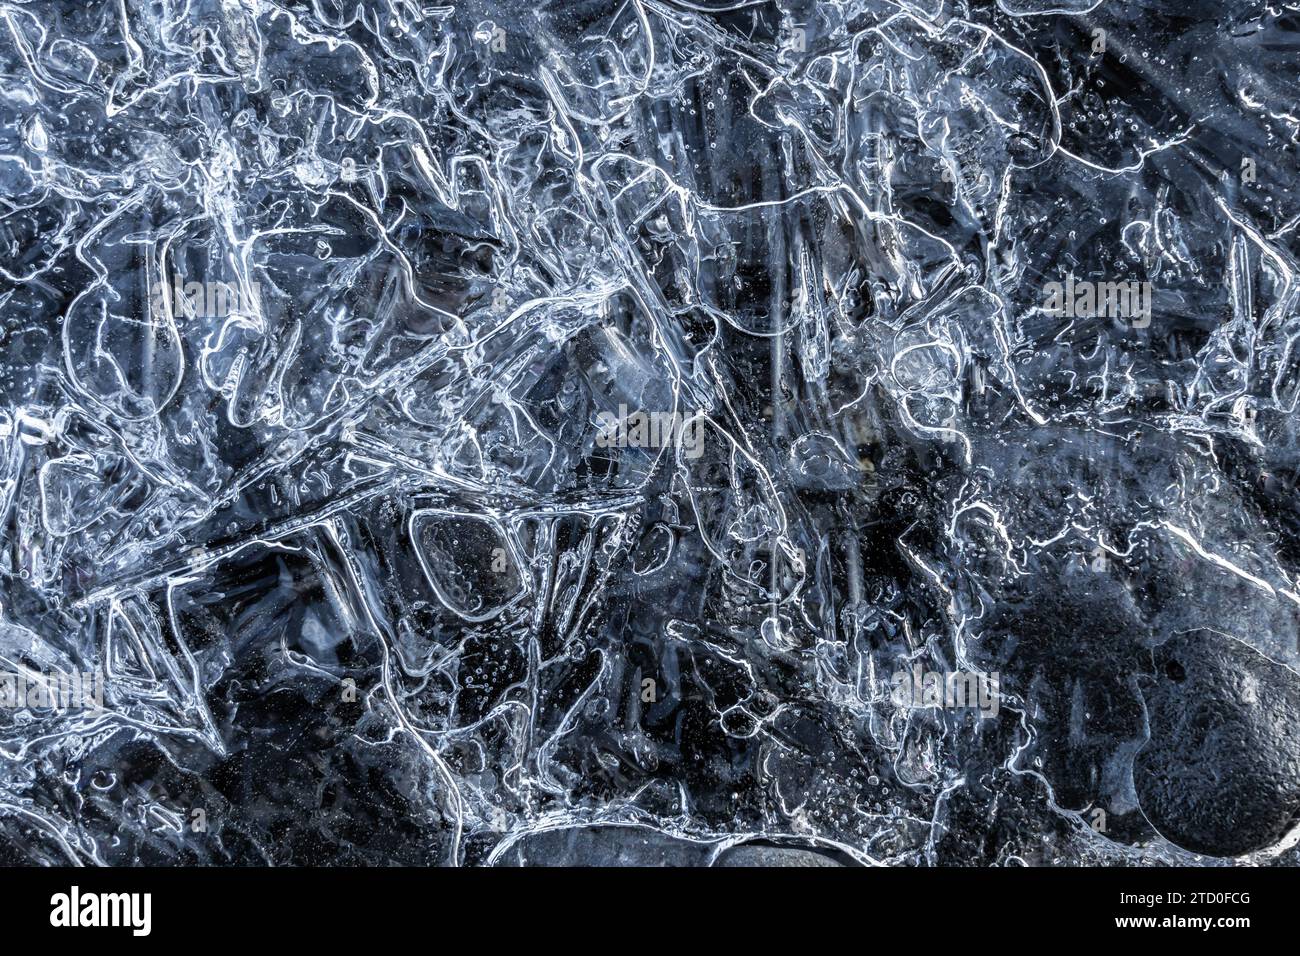 Un primo piano di una superficie ghiacciata mostra intricati modelli di ghiaccio con aree chiare e opache, catturando la bellezza naturale e la complessità del ghiaccio. Foto Stock